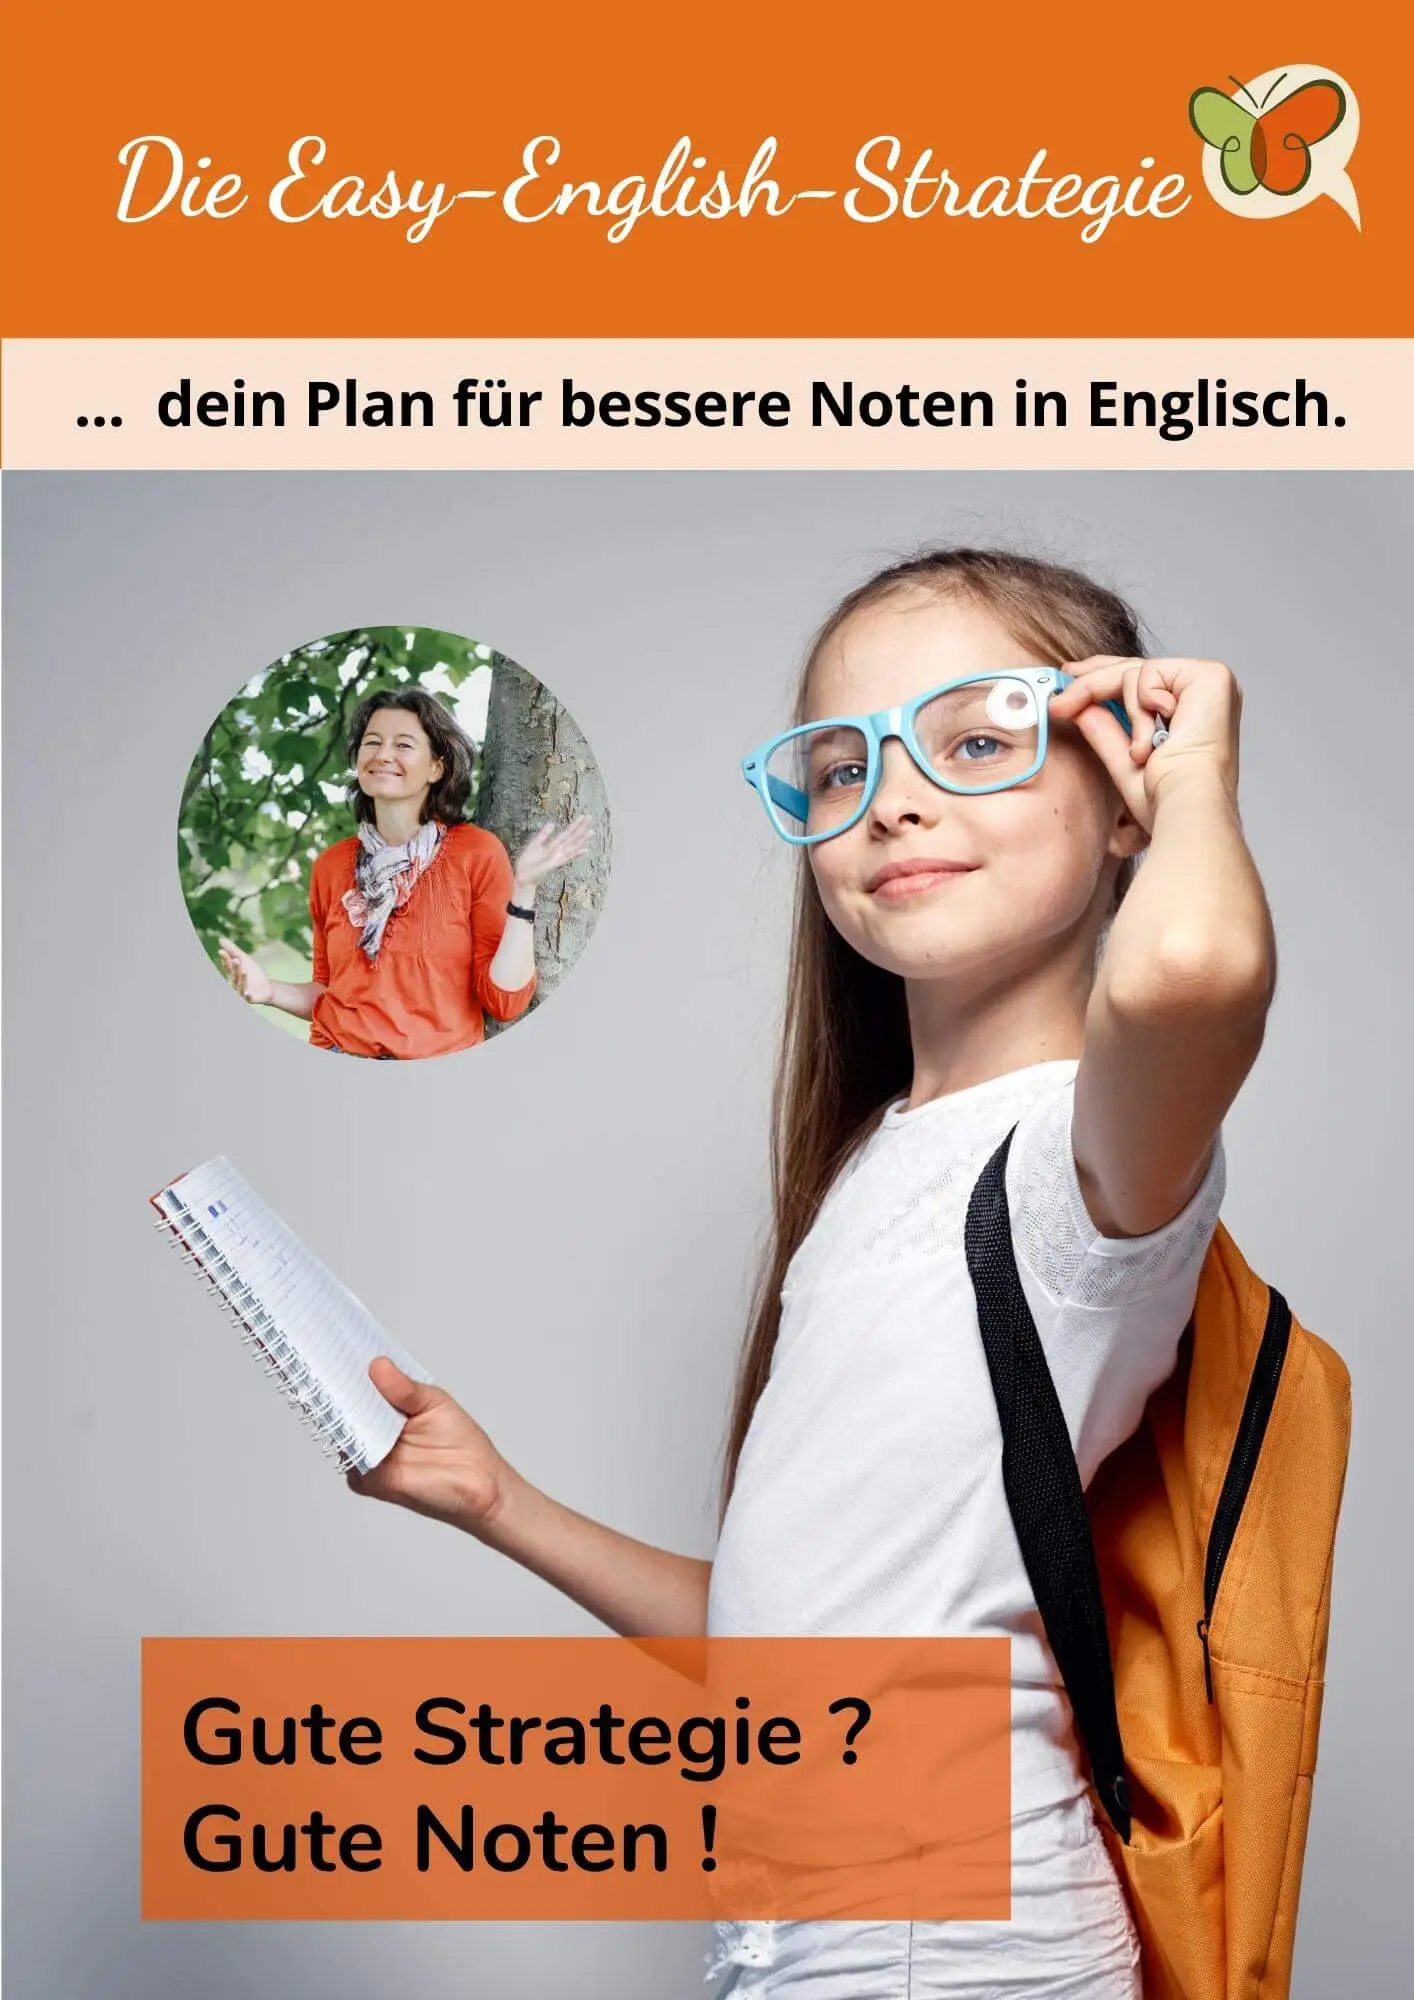 Mädchen mit Schulrucksack und auffallender Brille steht selbstbewusst da. Darüber steht: Easy-English-Strategie, dein Plan für bessere Noten in Englisch.